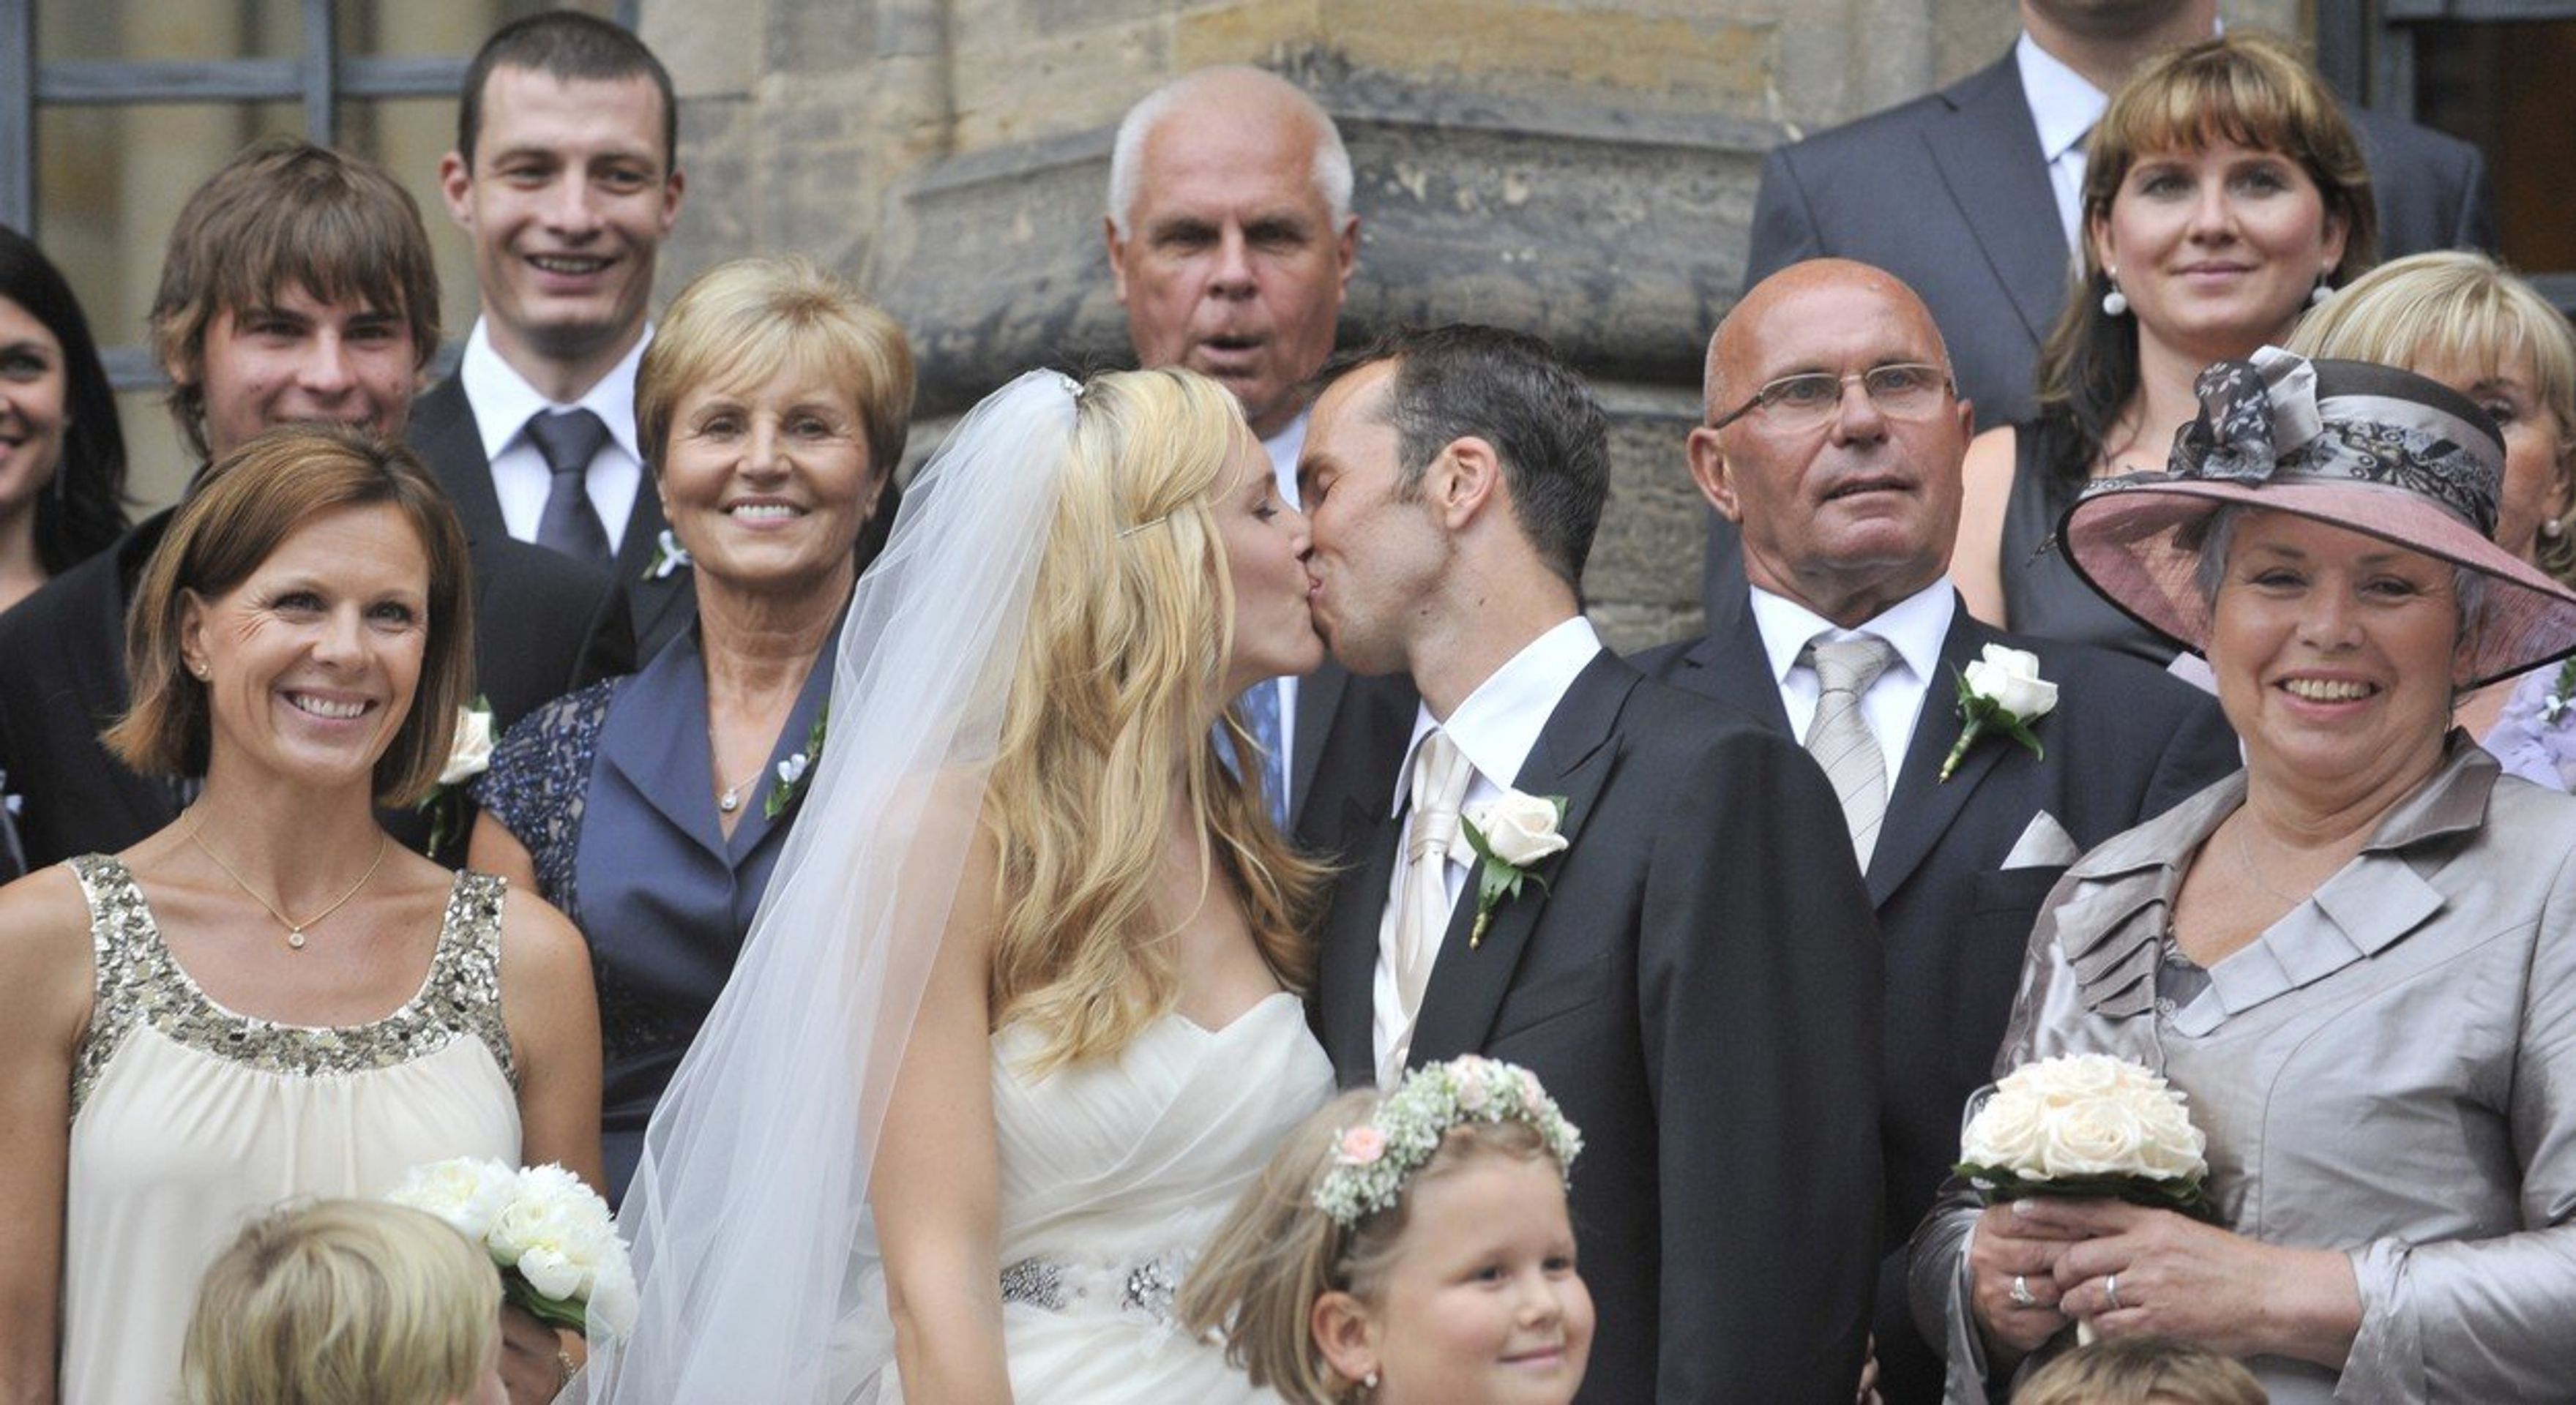 Radek Štěpánek a Nicole Vaidišová na první svatbě v roce 2010 - GALERIE: První svatba Radka Štěpánka a Nicole Vaidišové (4/5)